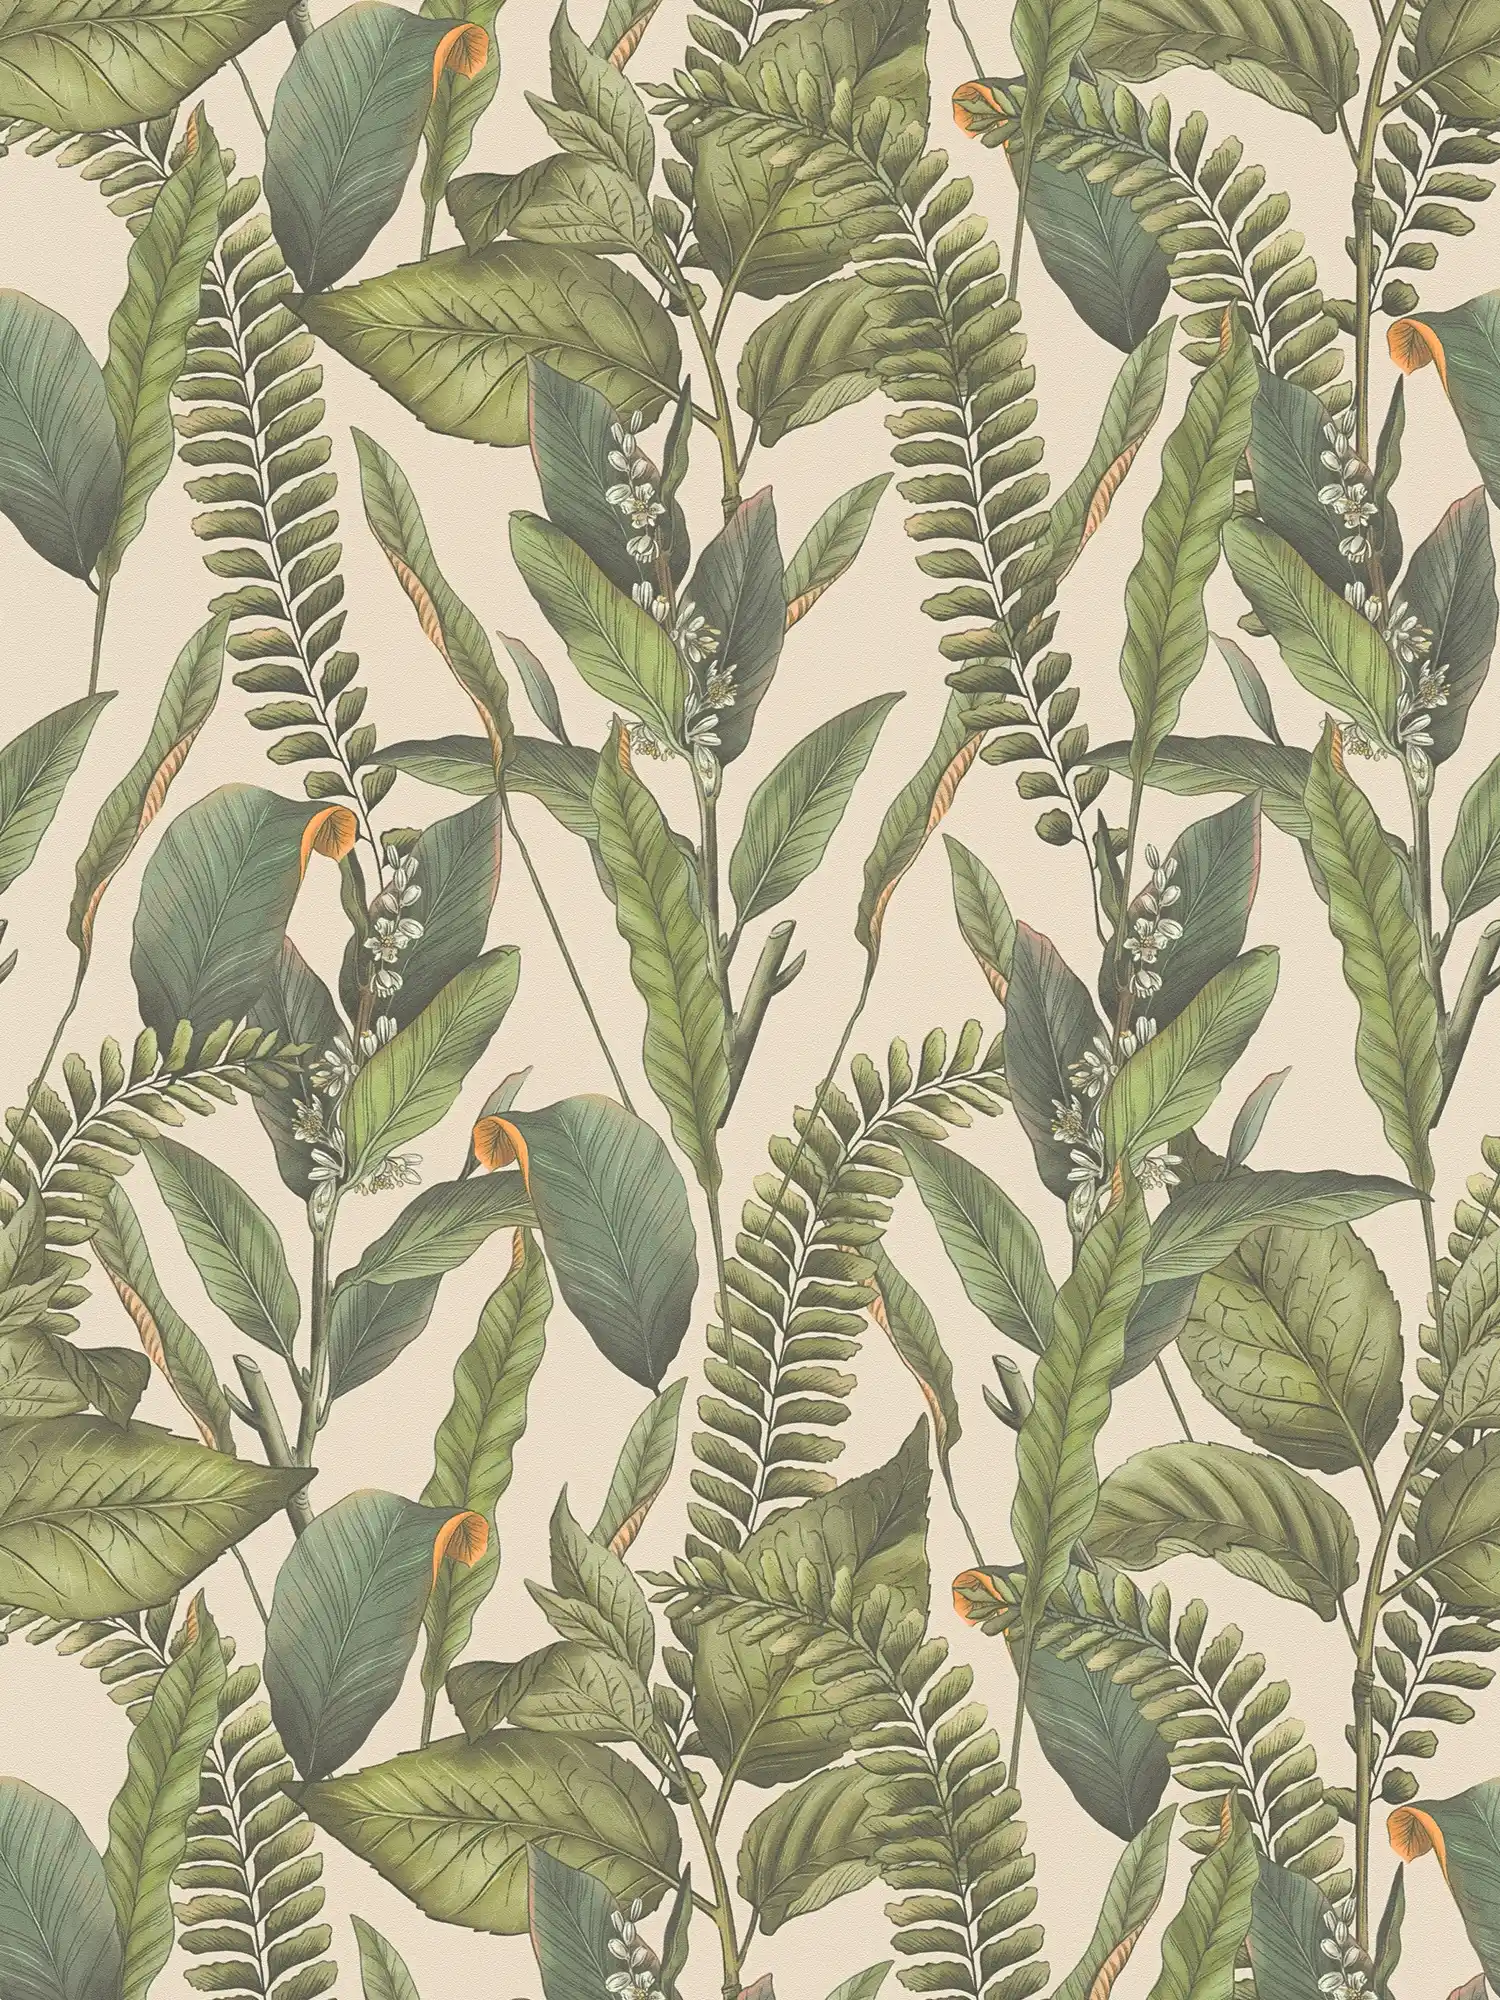 papier peint en papier jungle floral avec feuilles & fleurs structuré mat - crème, vert, orange
